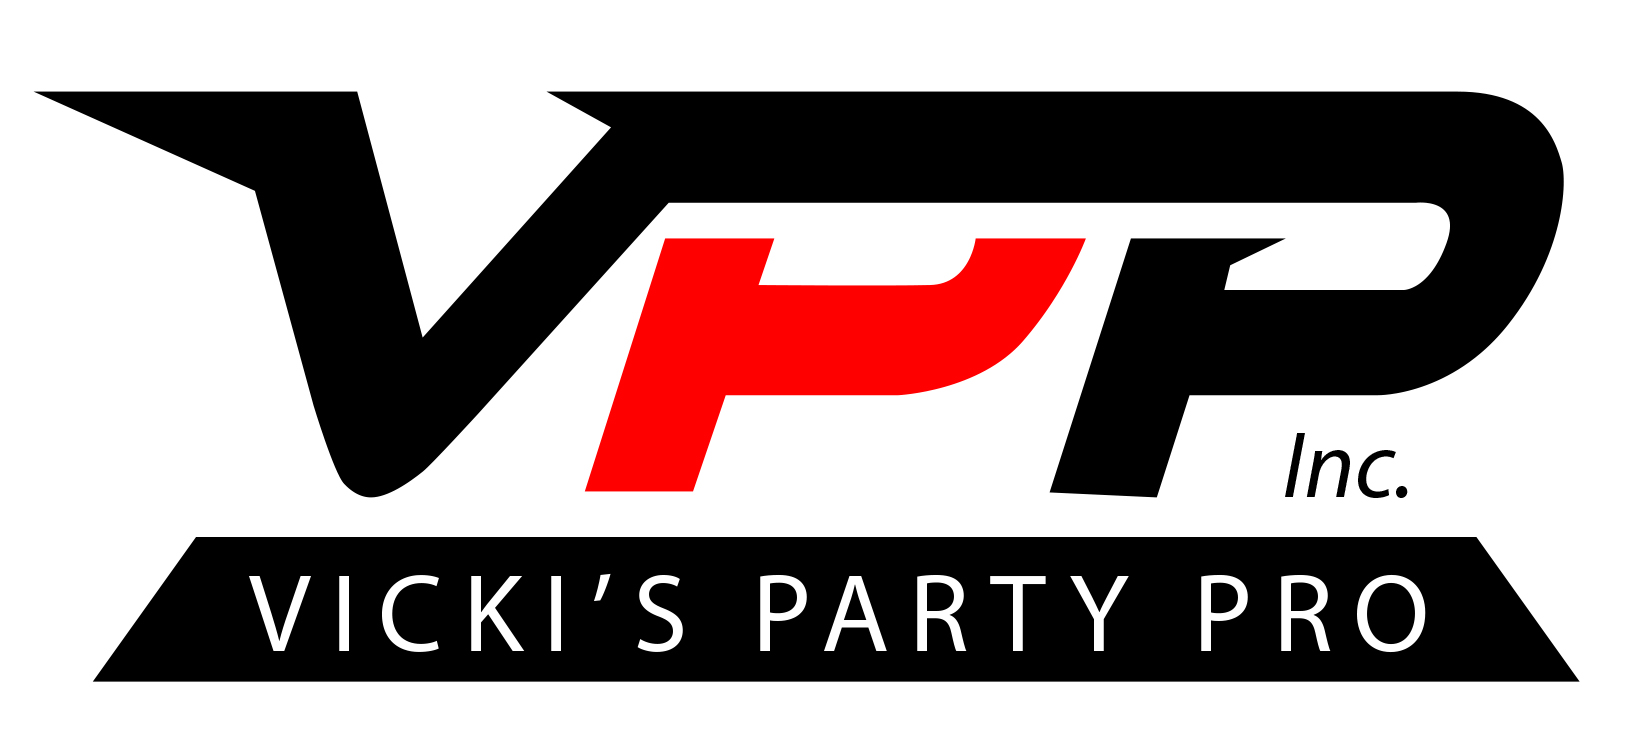 VPP Inc dba Vicki's Party Pro's Logo